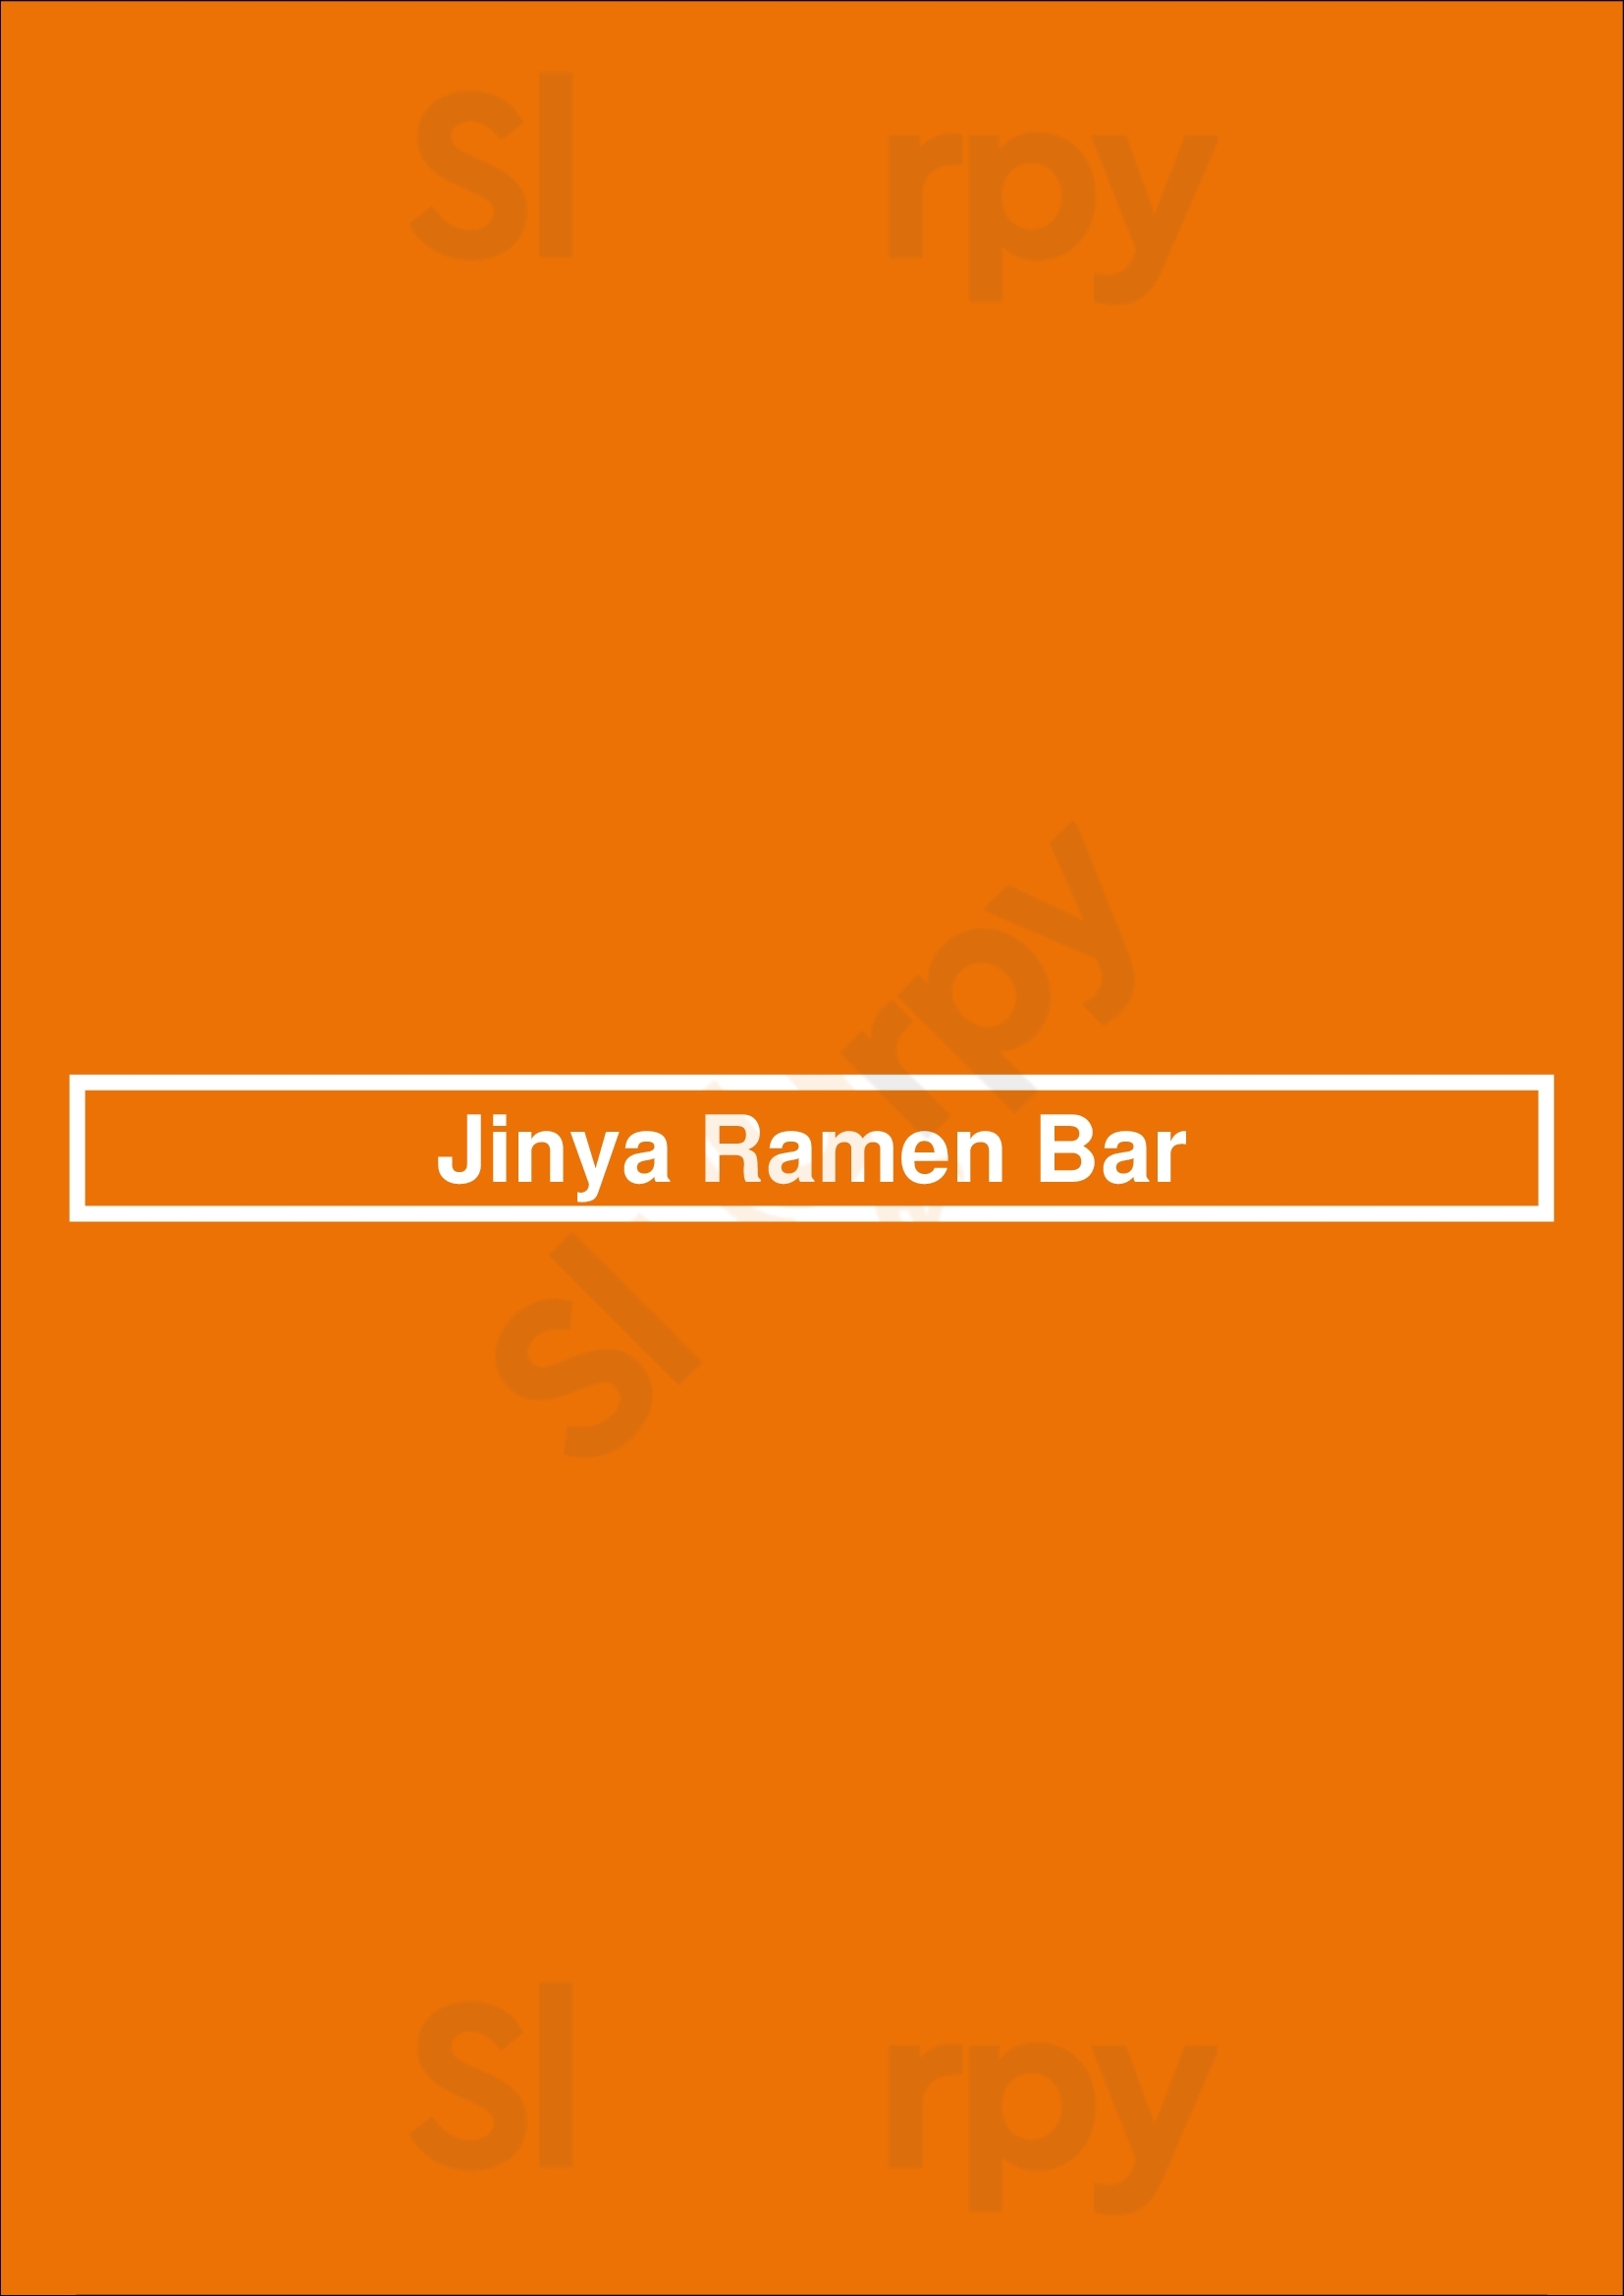 Jinya Ramen Bar Burnaby Menu - 1